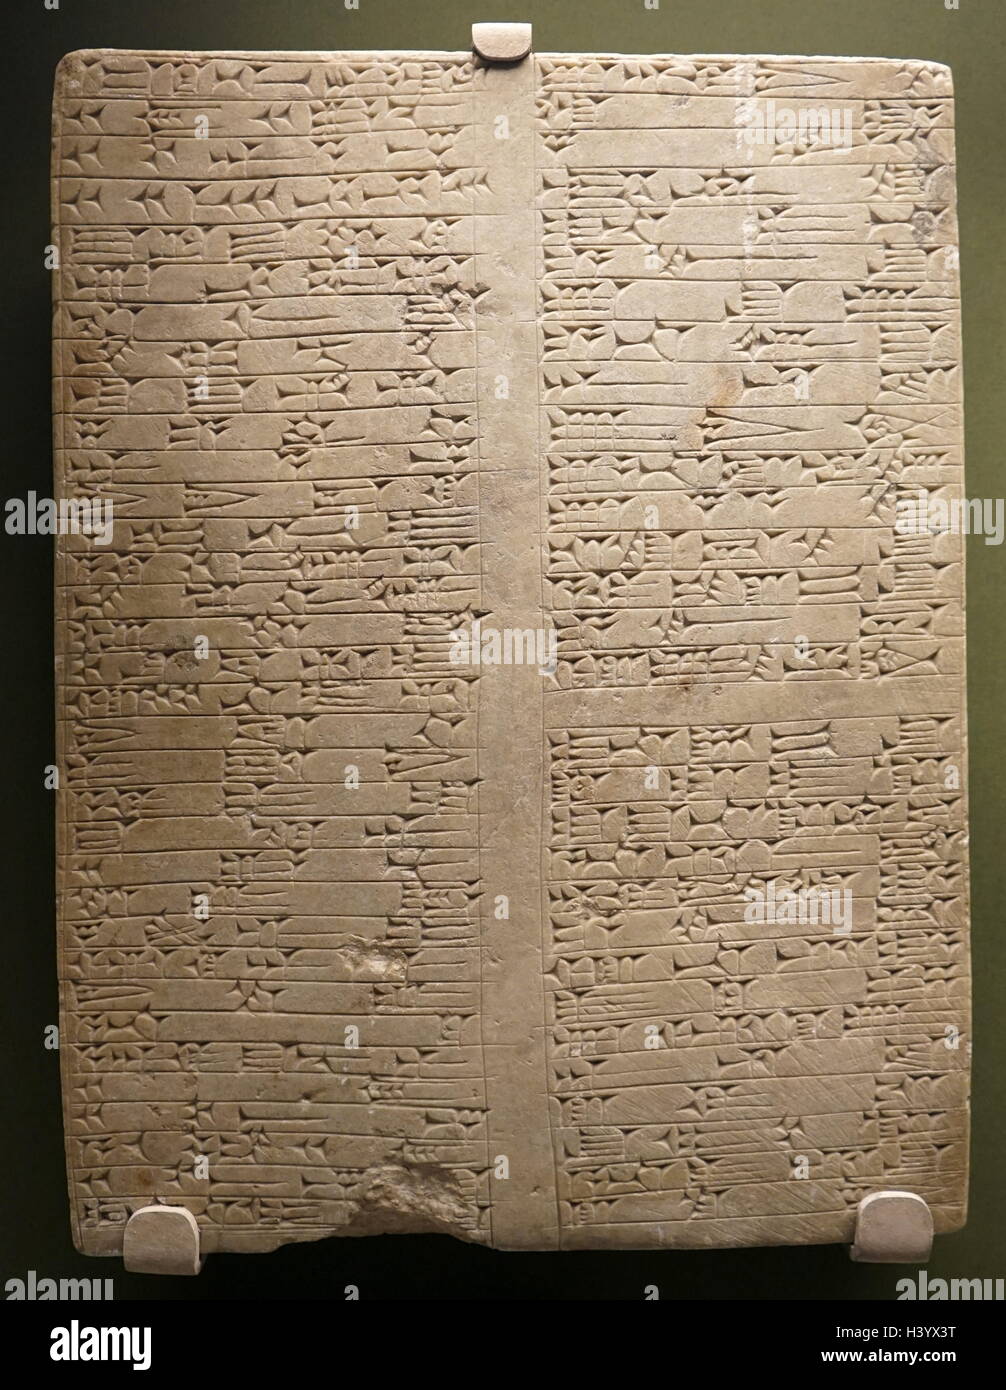 Inscritto pietra di fondazione che descrivono la ricostruzione del tempio della dea Dinitu, dal re Tukulti-Ninurta I. datata XIII secolo A.C. Foto Stock